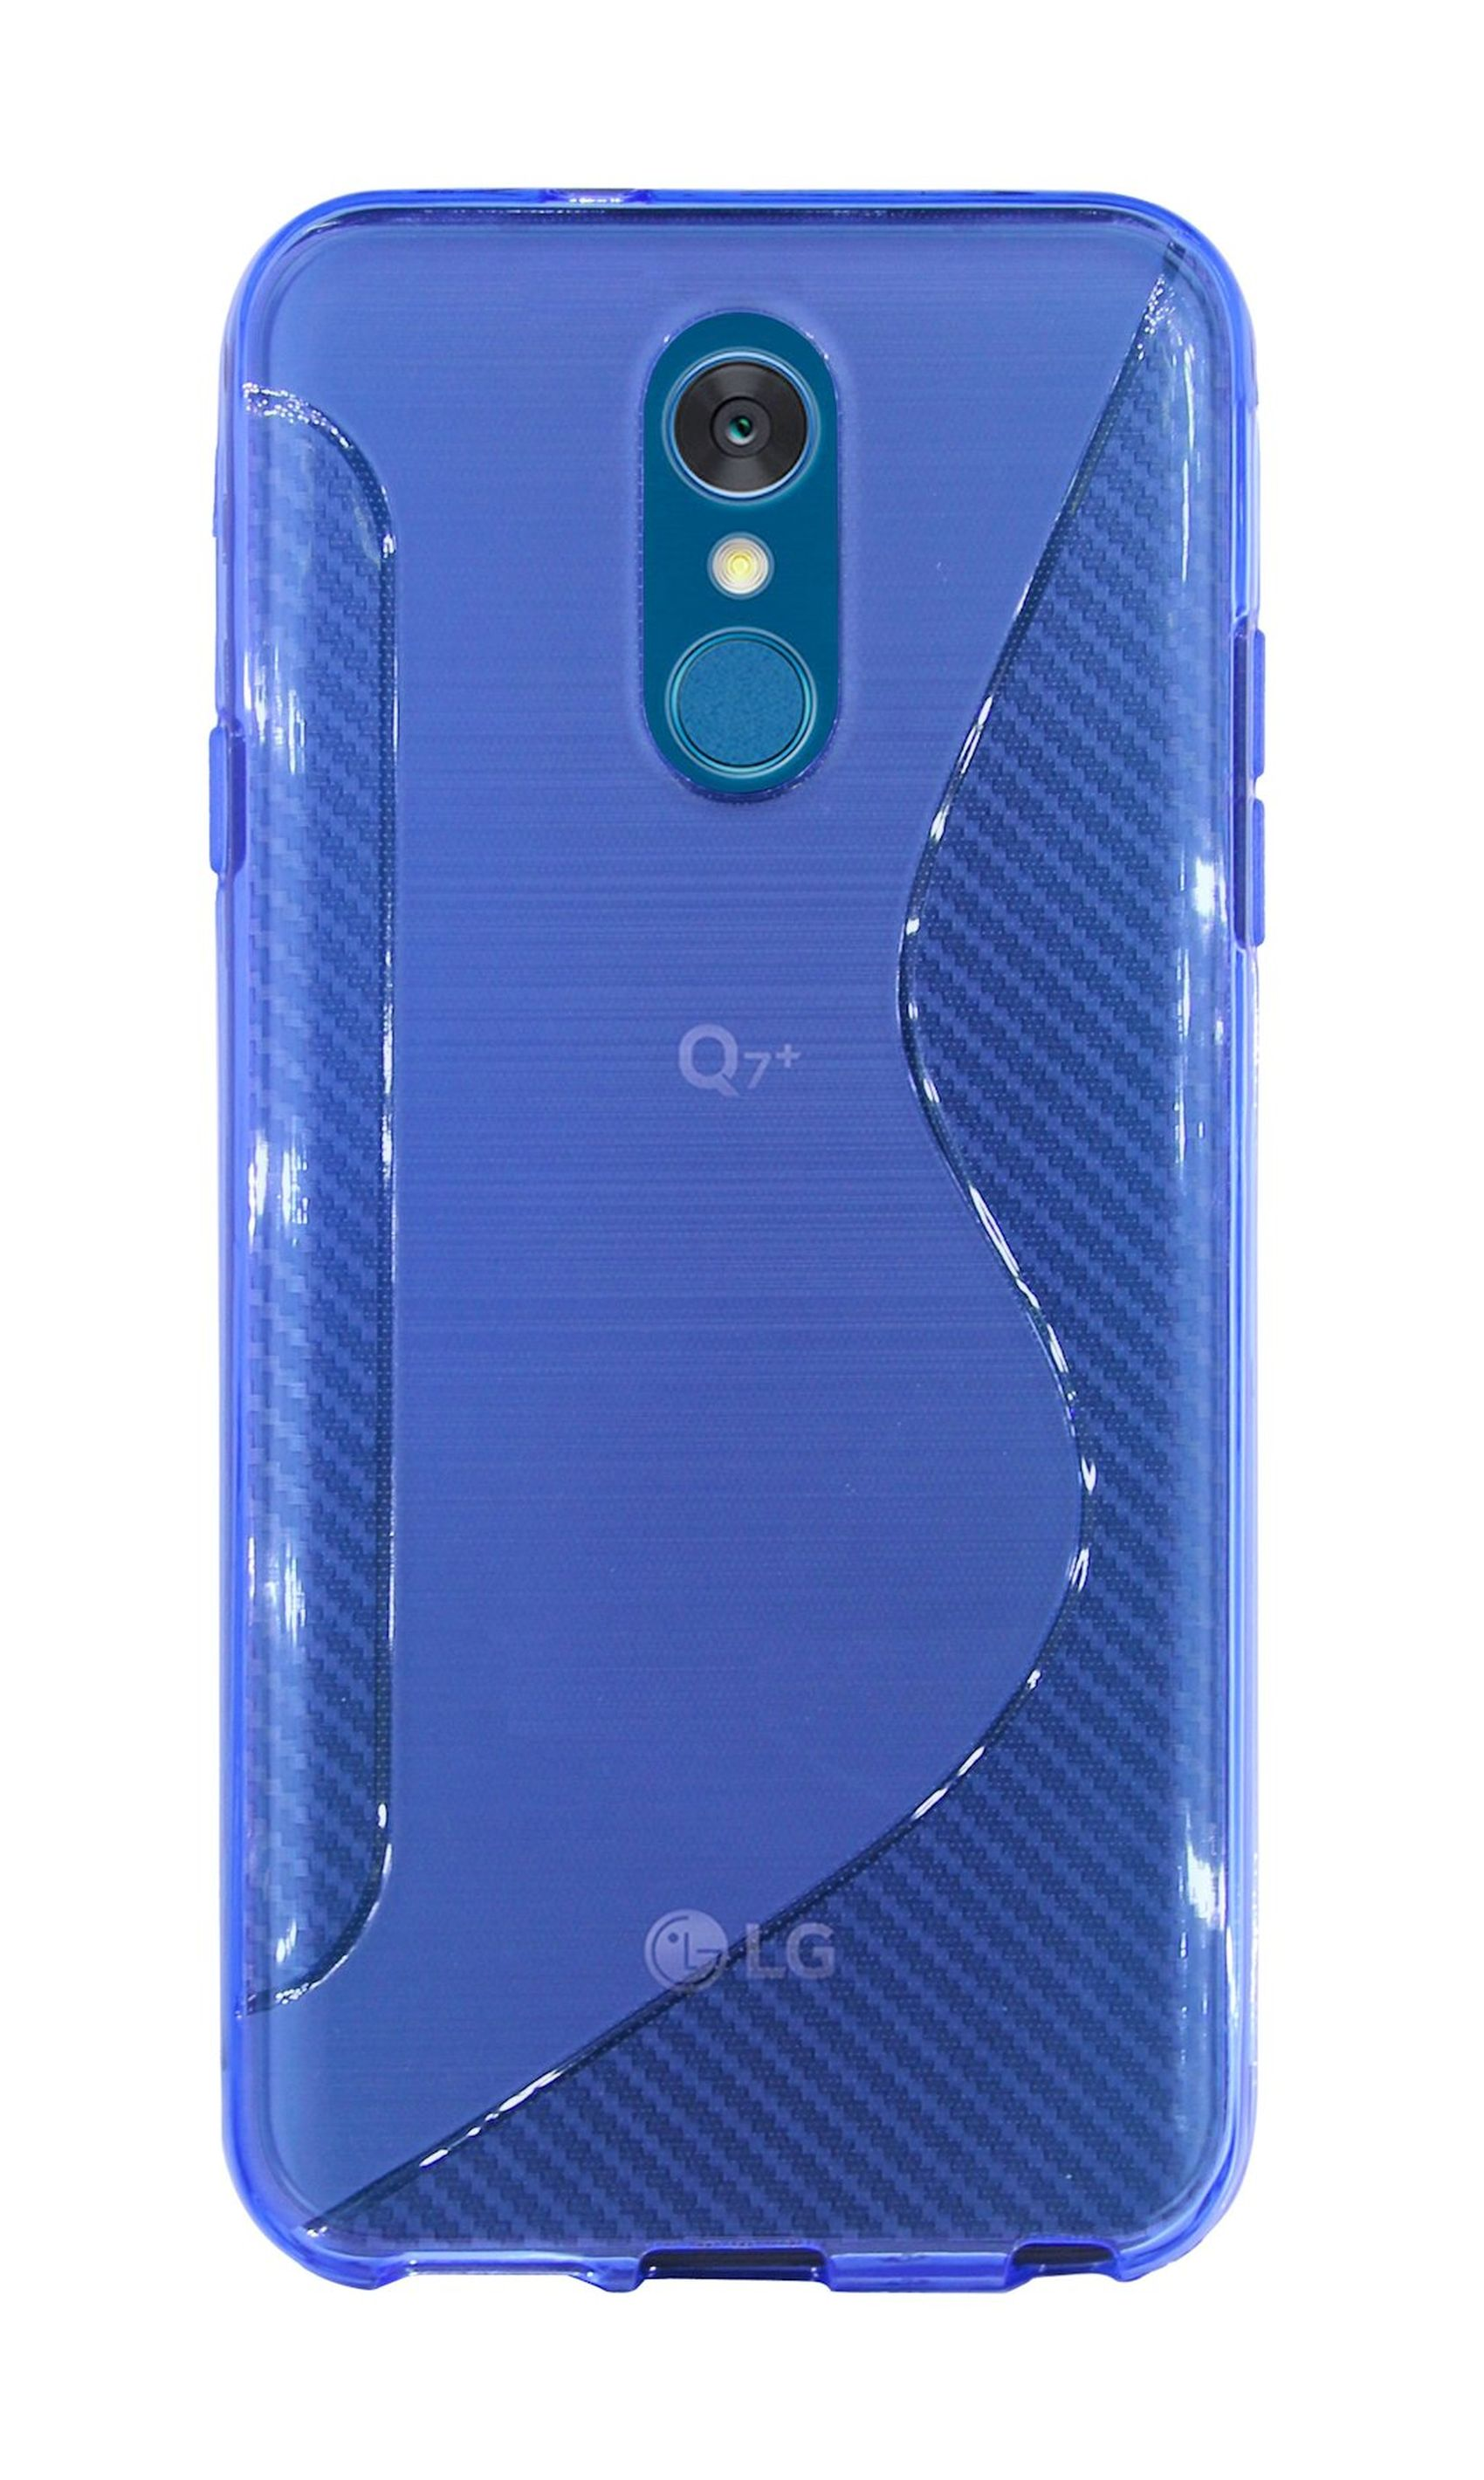 Blau Q7a, Cover, COFI S-Line LG, Bumper,